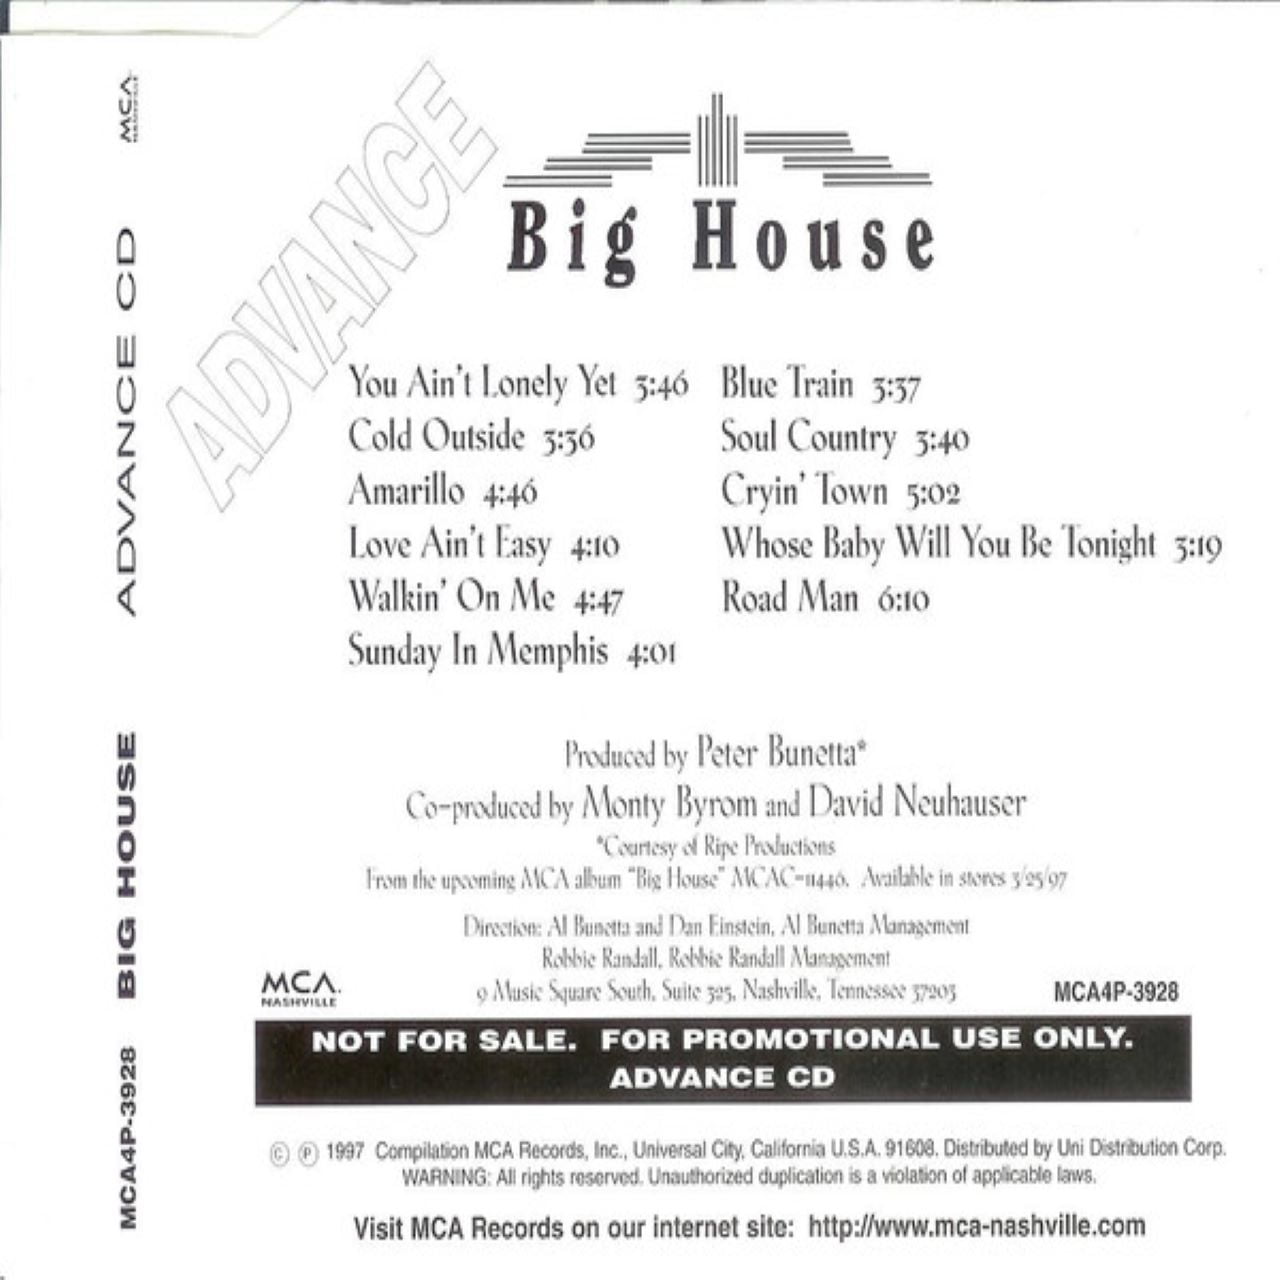 Big House - Big House cover album